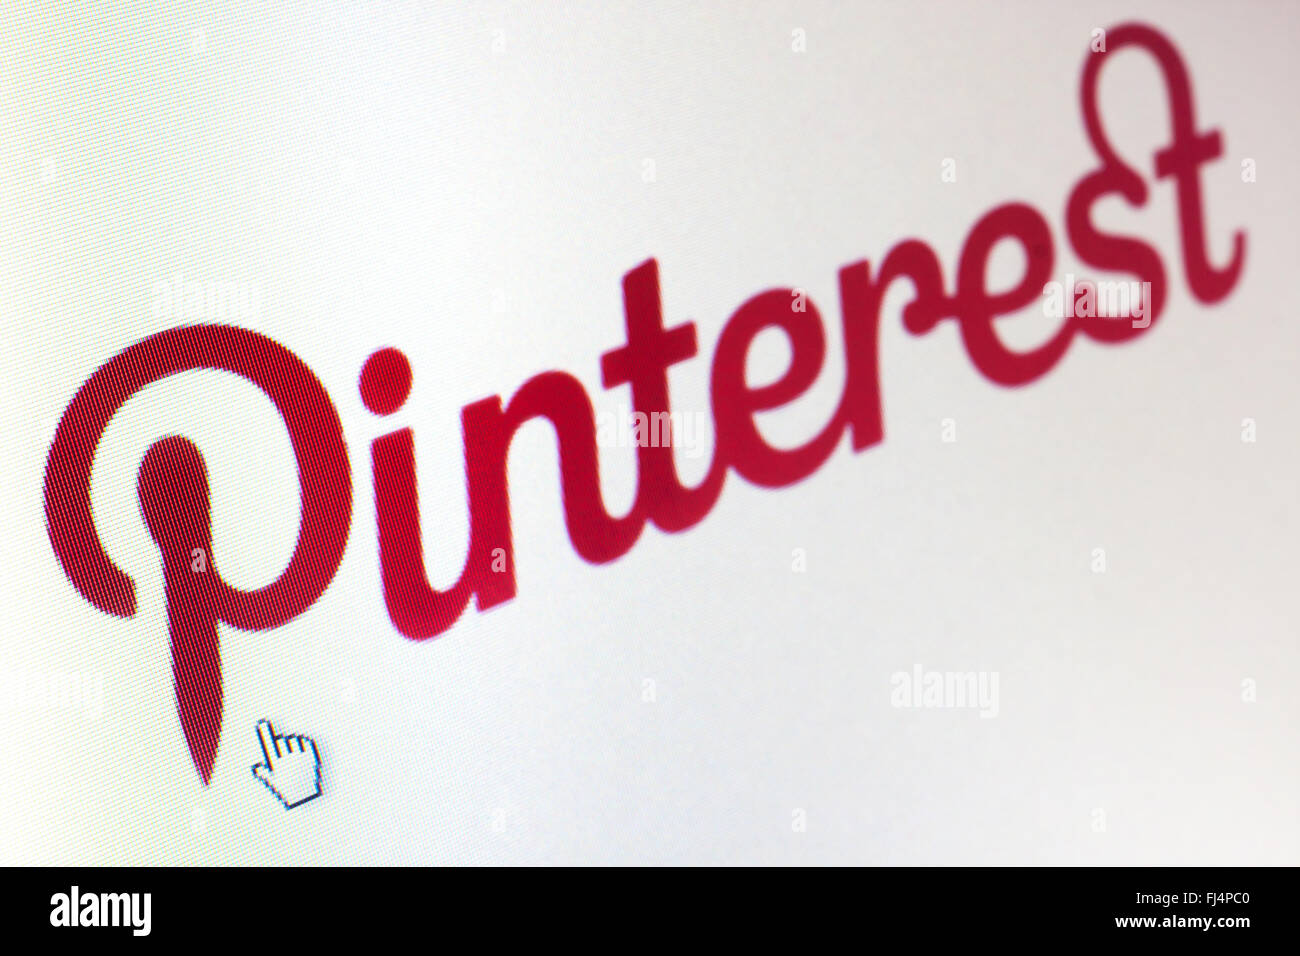 WIELICZKA, POLEN - 25. JUNI 2014. Pinterest Logo auf dem Computerbildschirm. Stockfoto